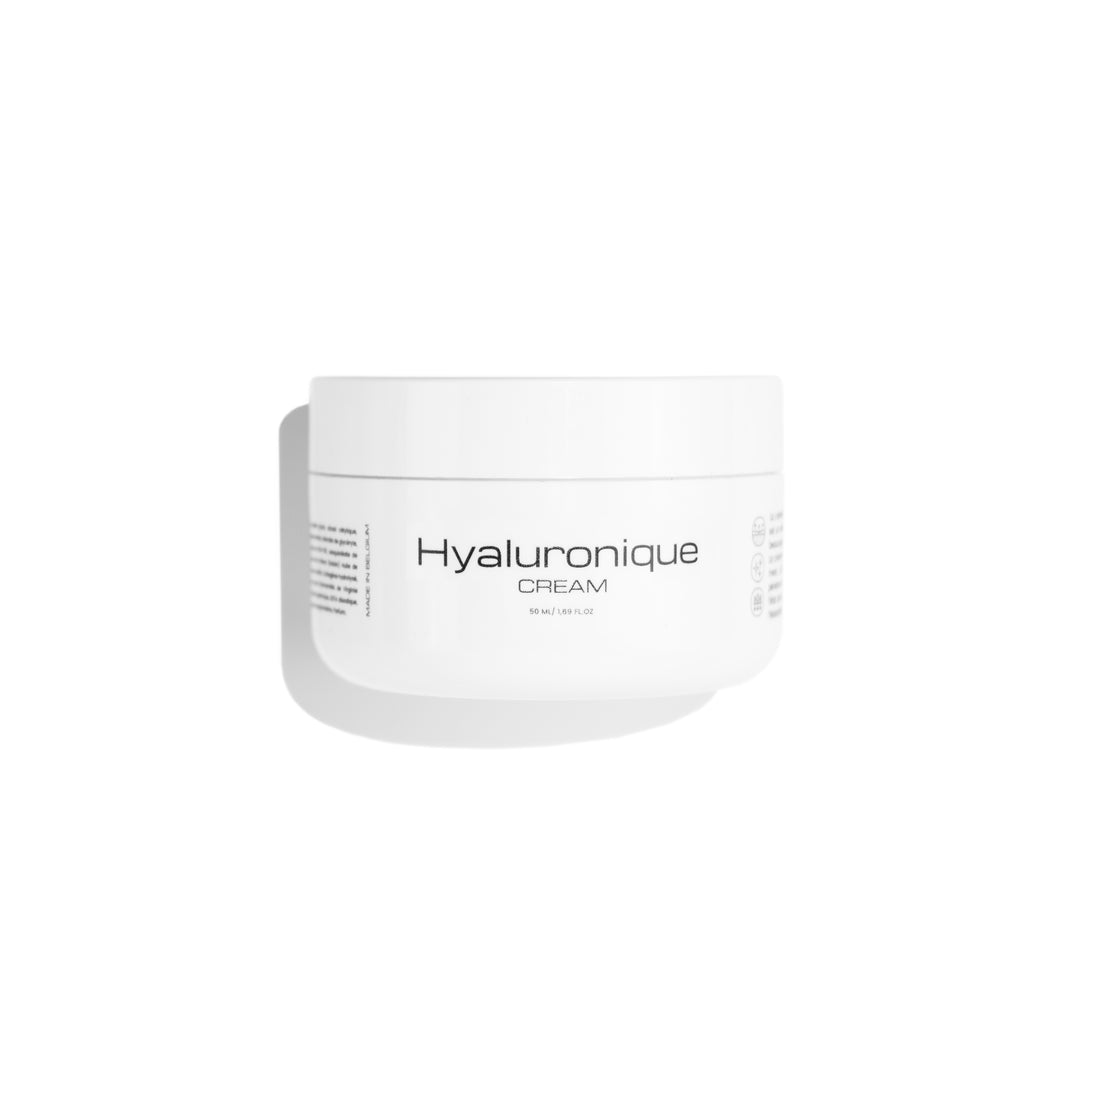 Hyaluronique cream